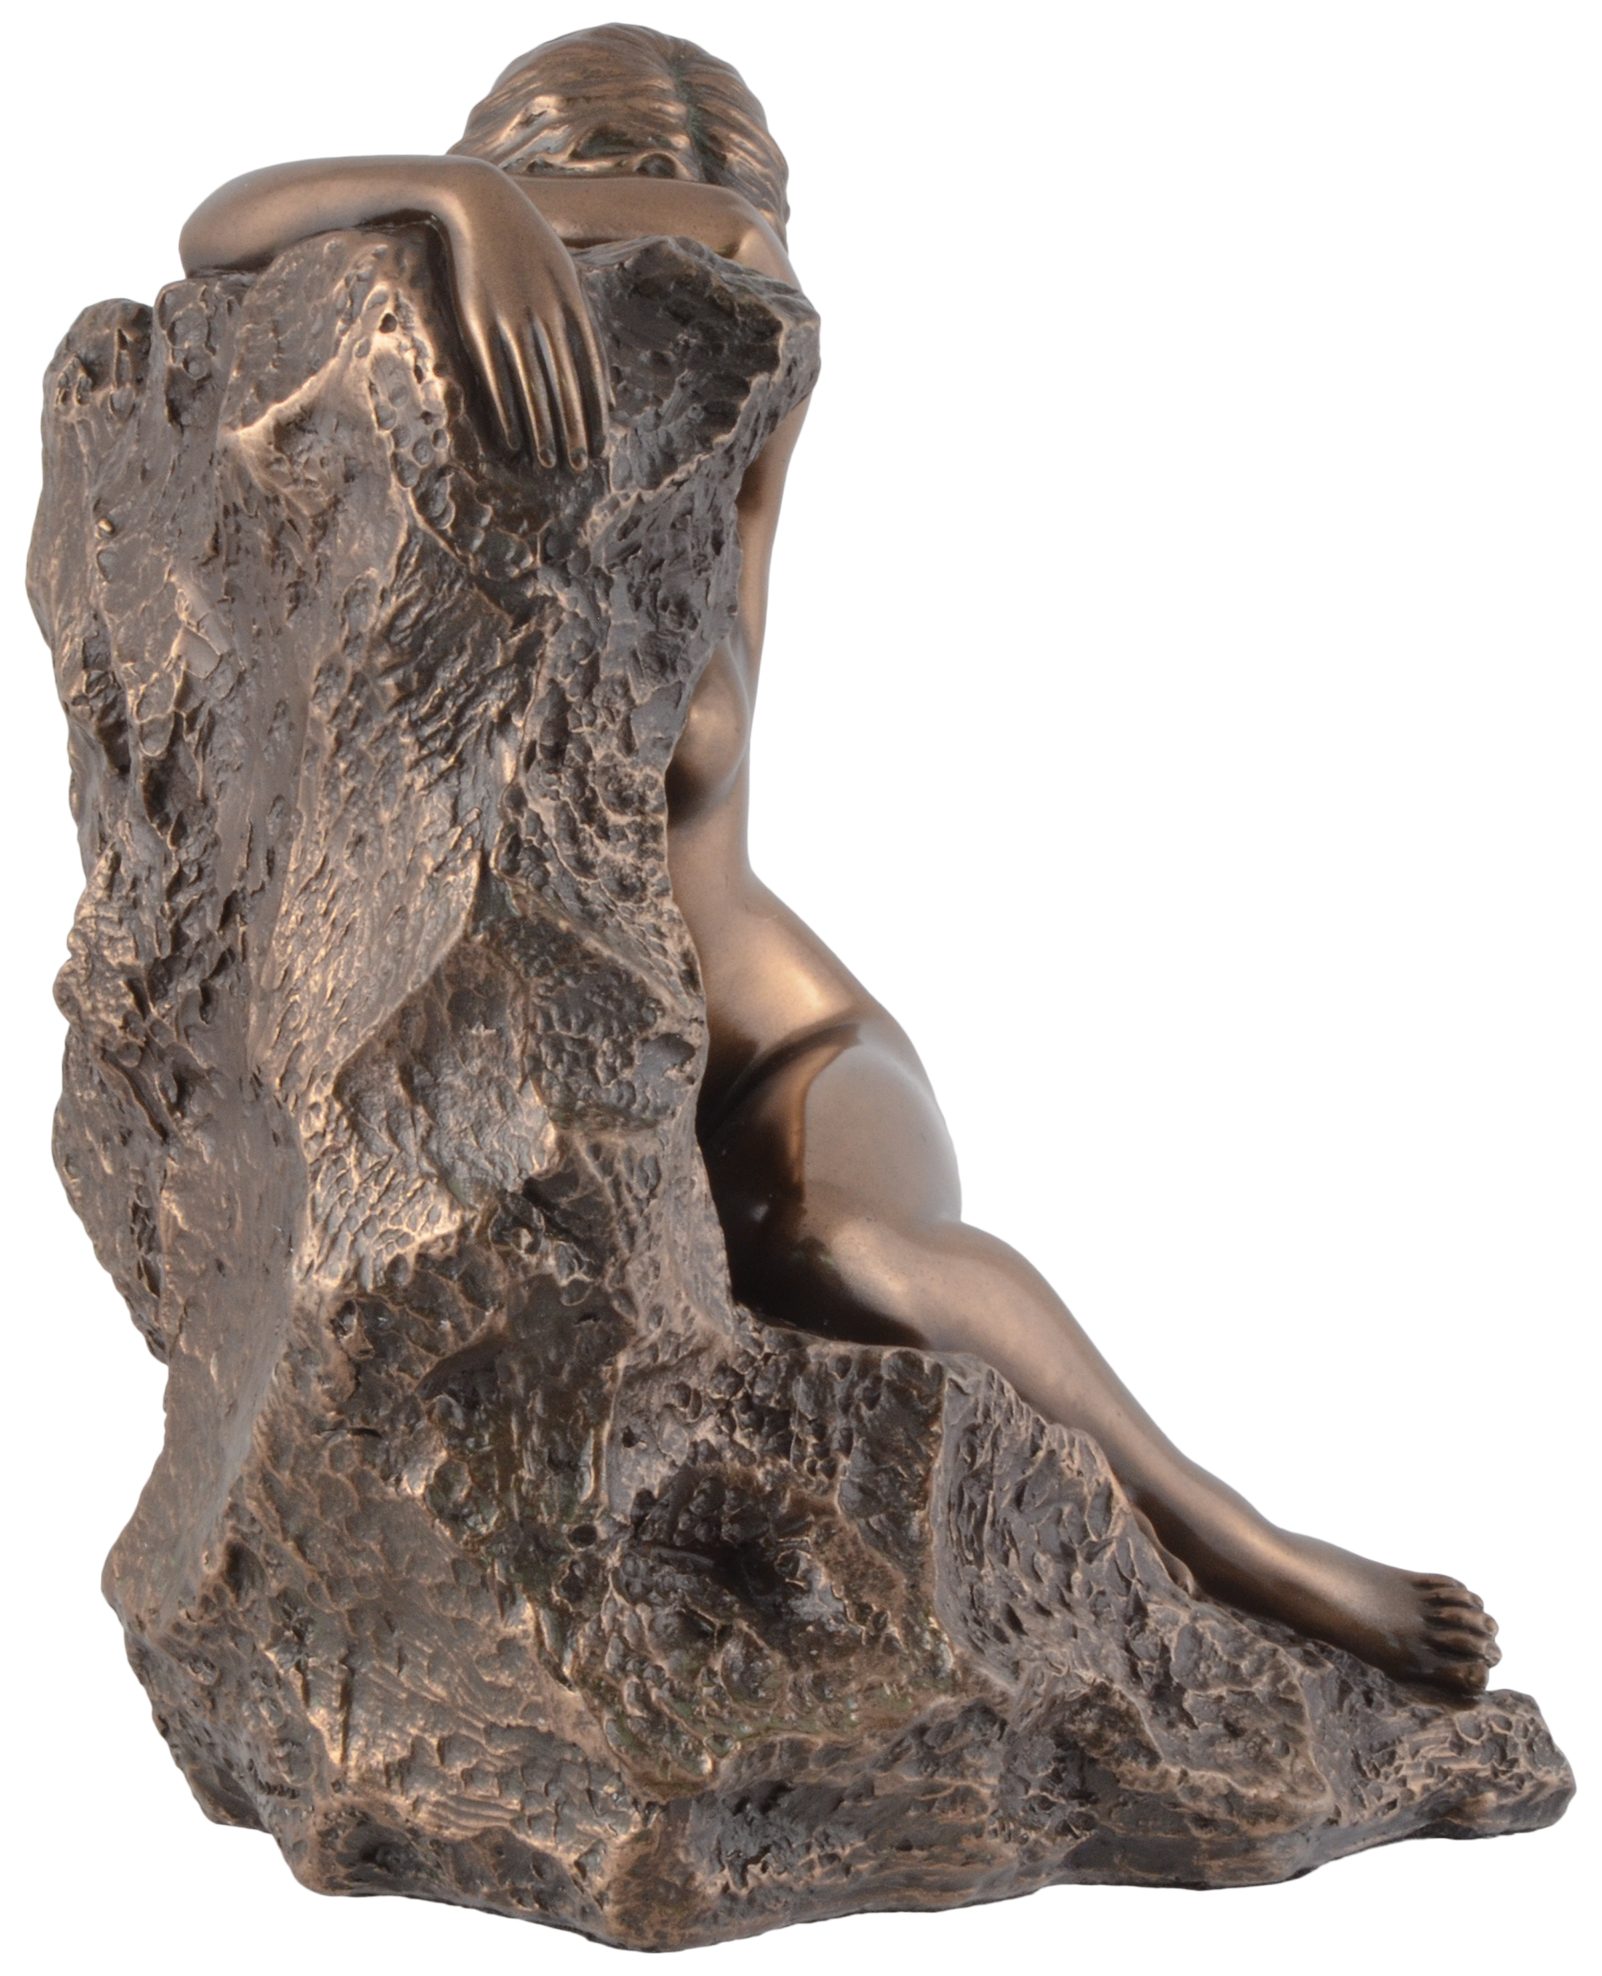 Vogler direct Gmbh Dekofigur by Nackte ca. Meeresfelsen Akt Hand von 14x10x15cm am - Strandgut bronziert, LxBxH: Veronese, Frau